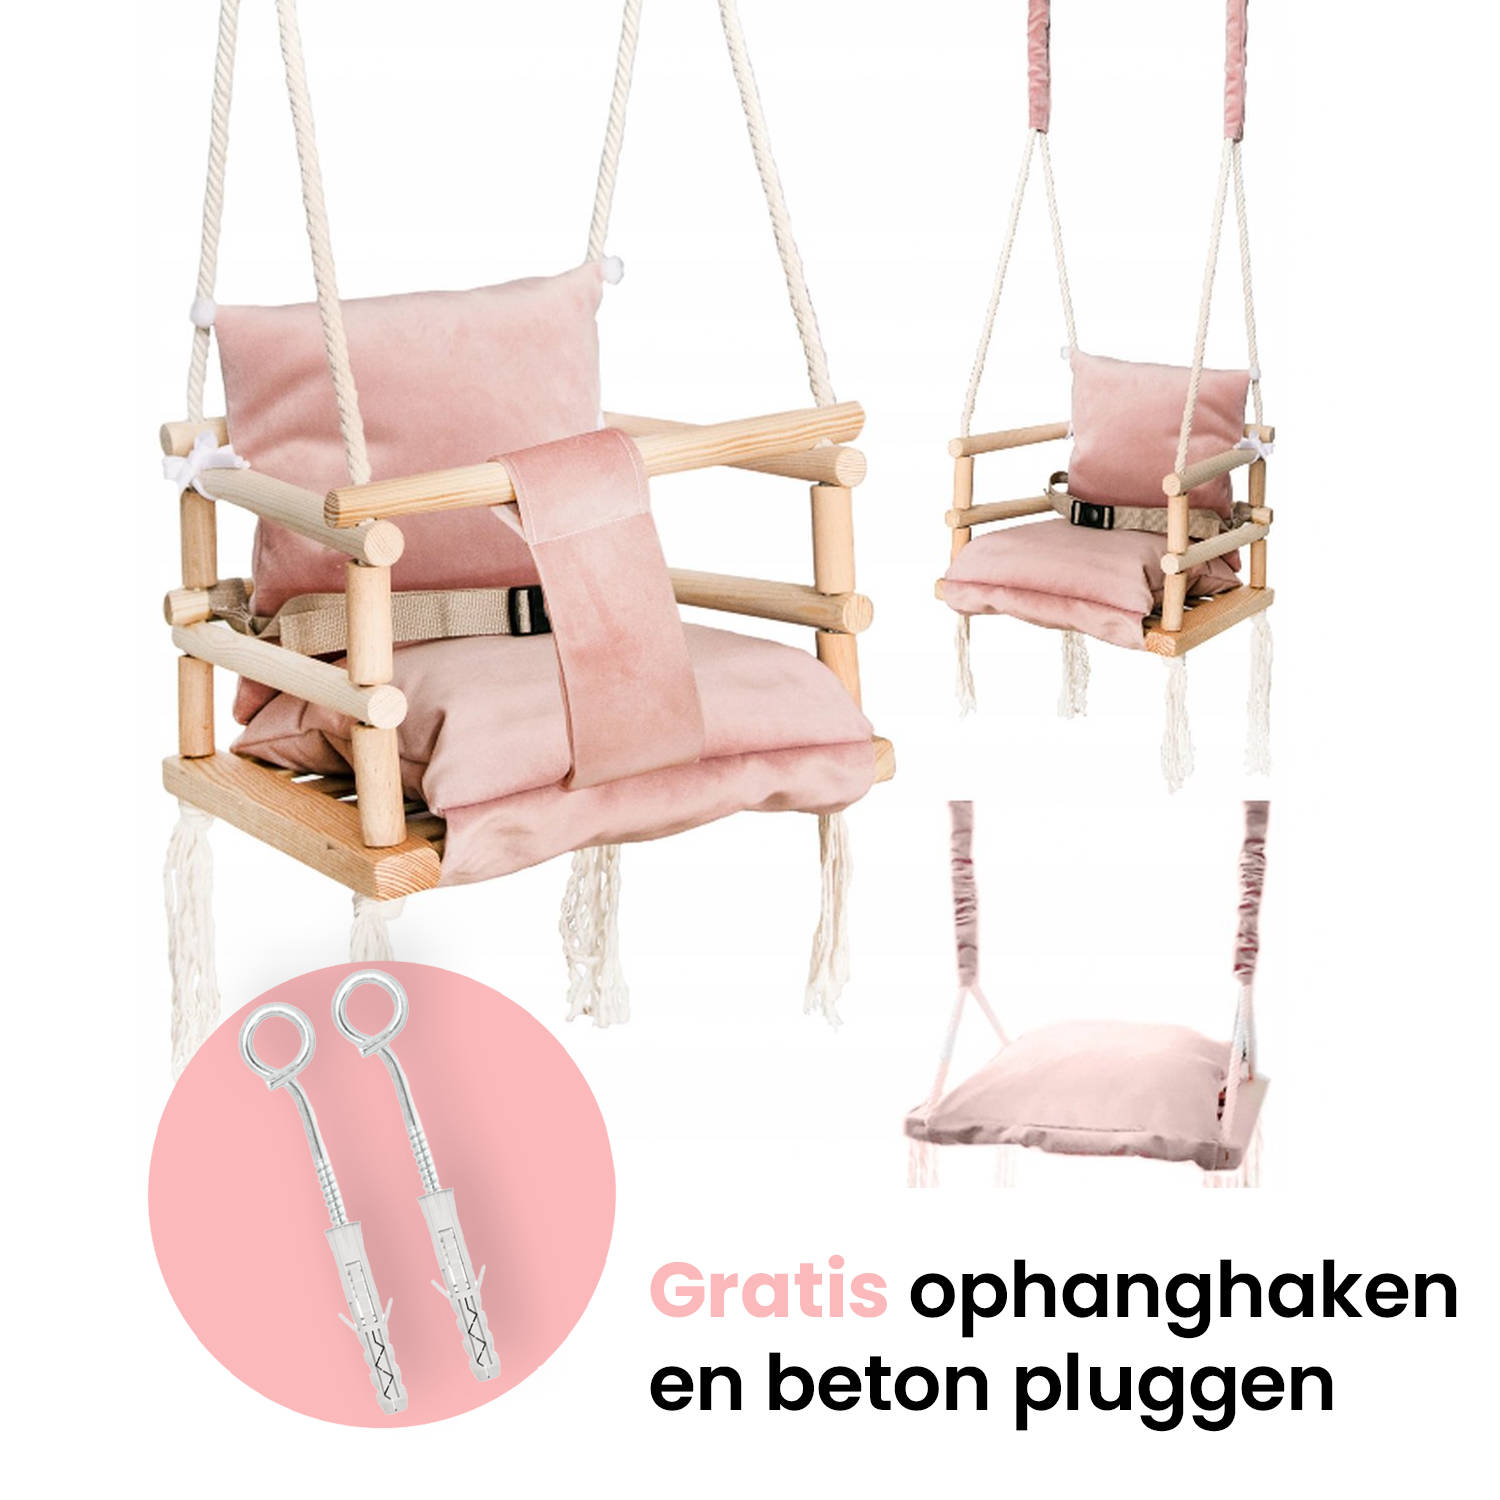 Luxe houten 3 in 1 roze meegroei baby schommel en Kinder schommel – Baby swing – Schommel die meegroeit met je kindje - Schommelstoel - Schommels - handgemaakt